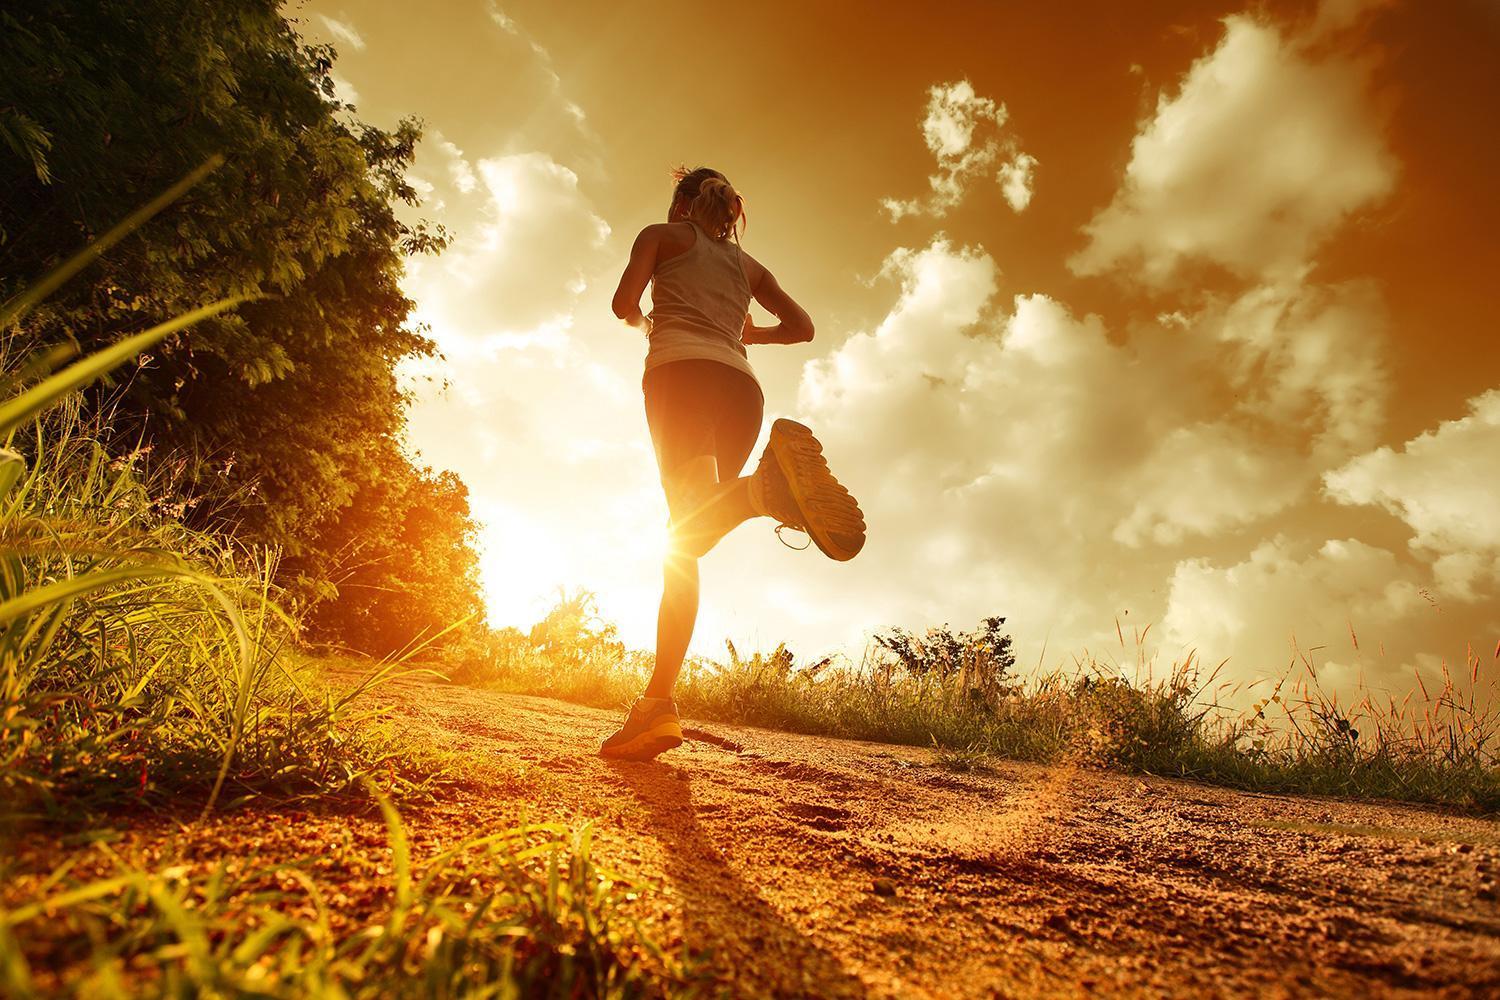 跑步在清早的妇女 库存图片. 图片 包括有 快速, 运输路线, 早晨, 女性, 马拉松, 重新创建, 天空 - 14789001